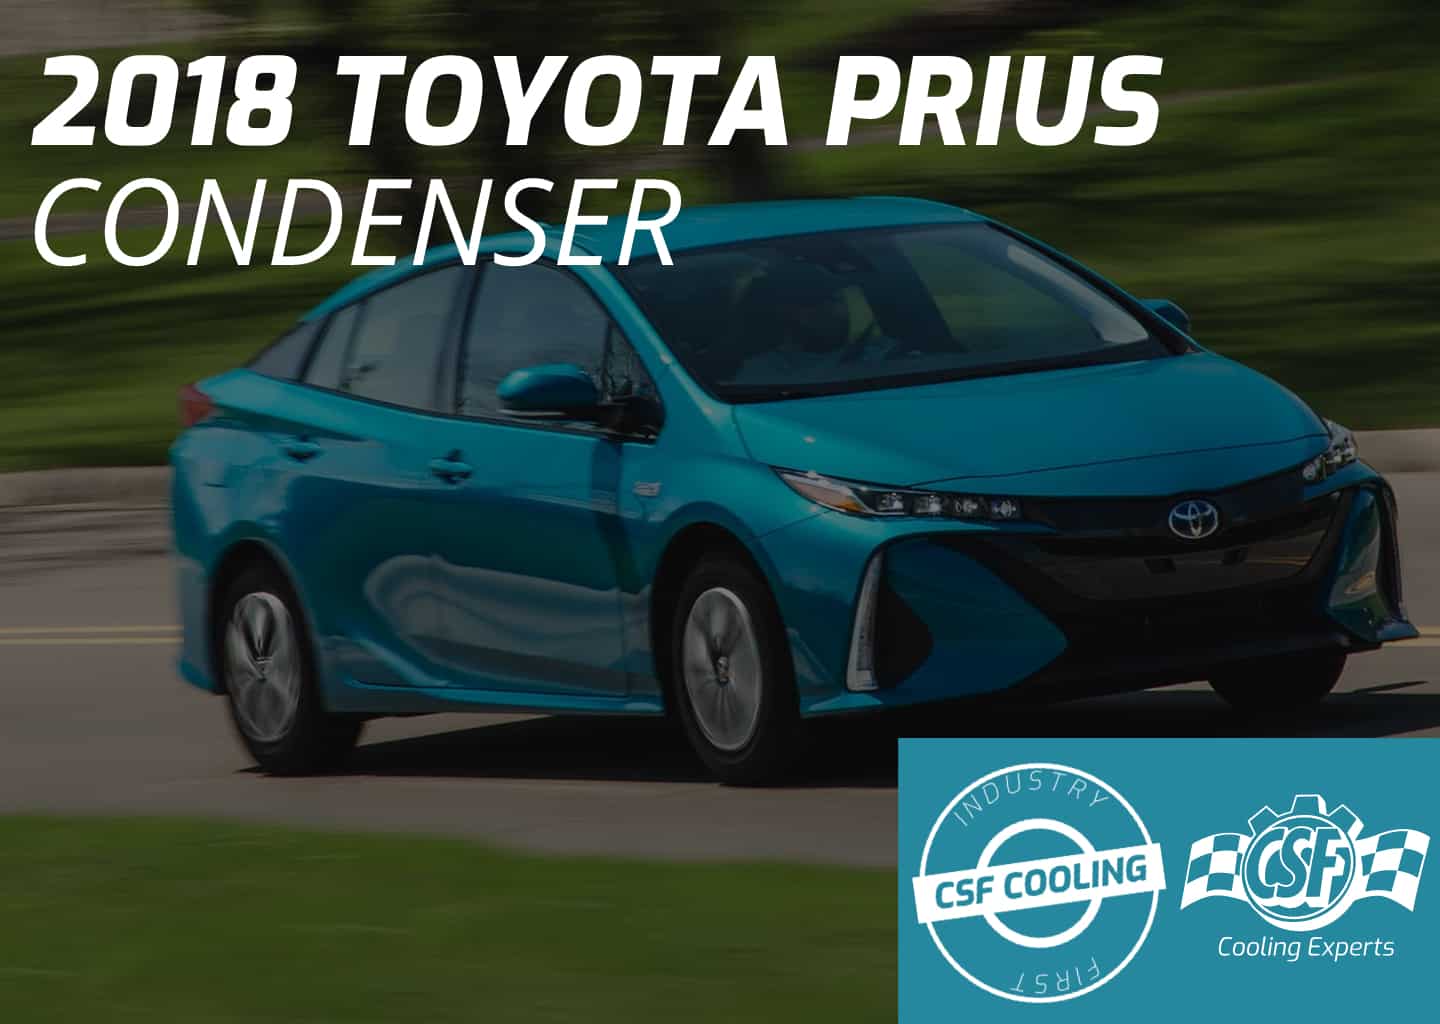 2018 Toyota Prius Condenser